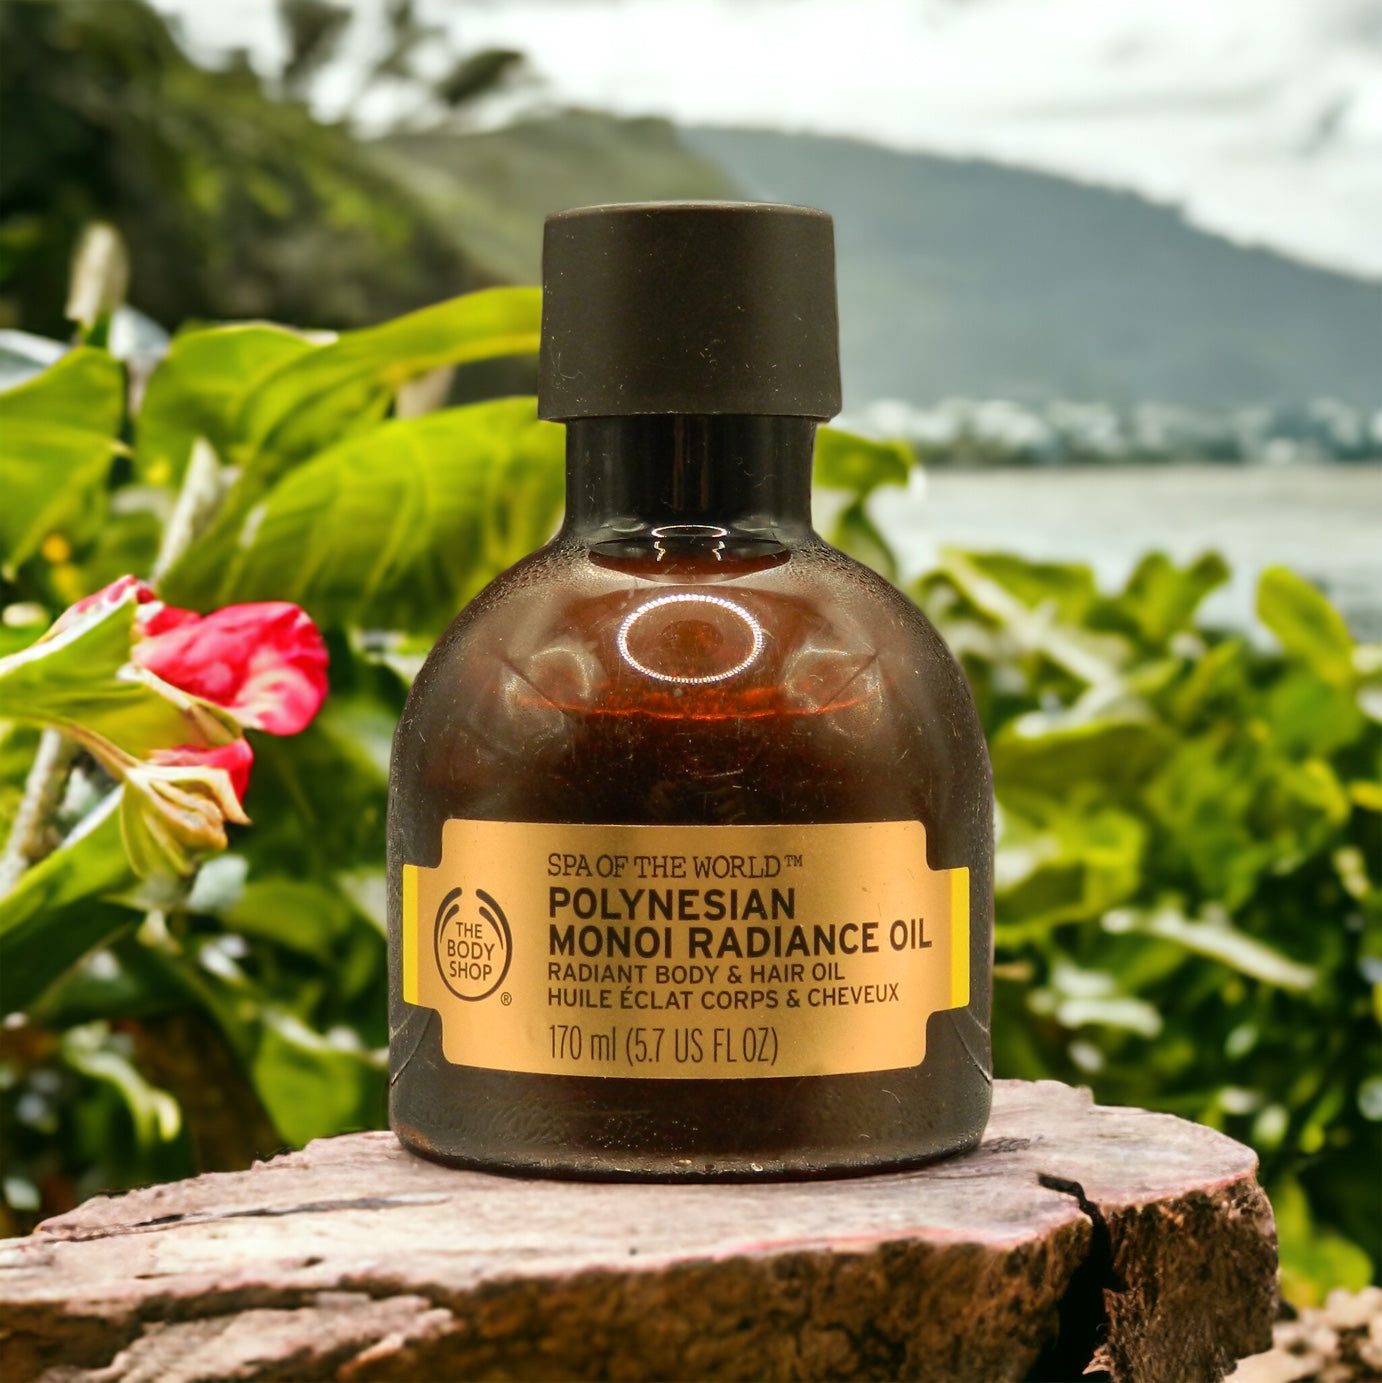 The BODY SHOP Spa of The World™ Polynesian Monoi Radiance Oil 170ml